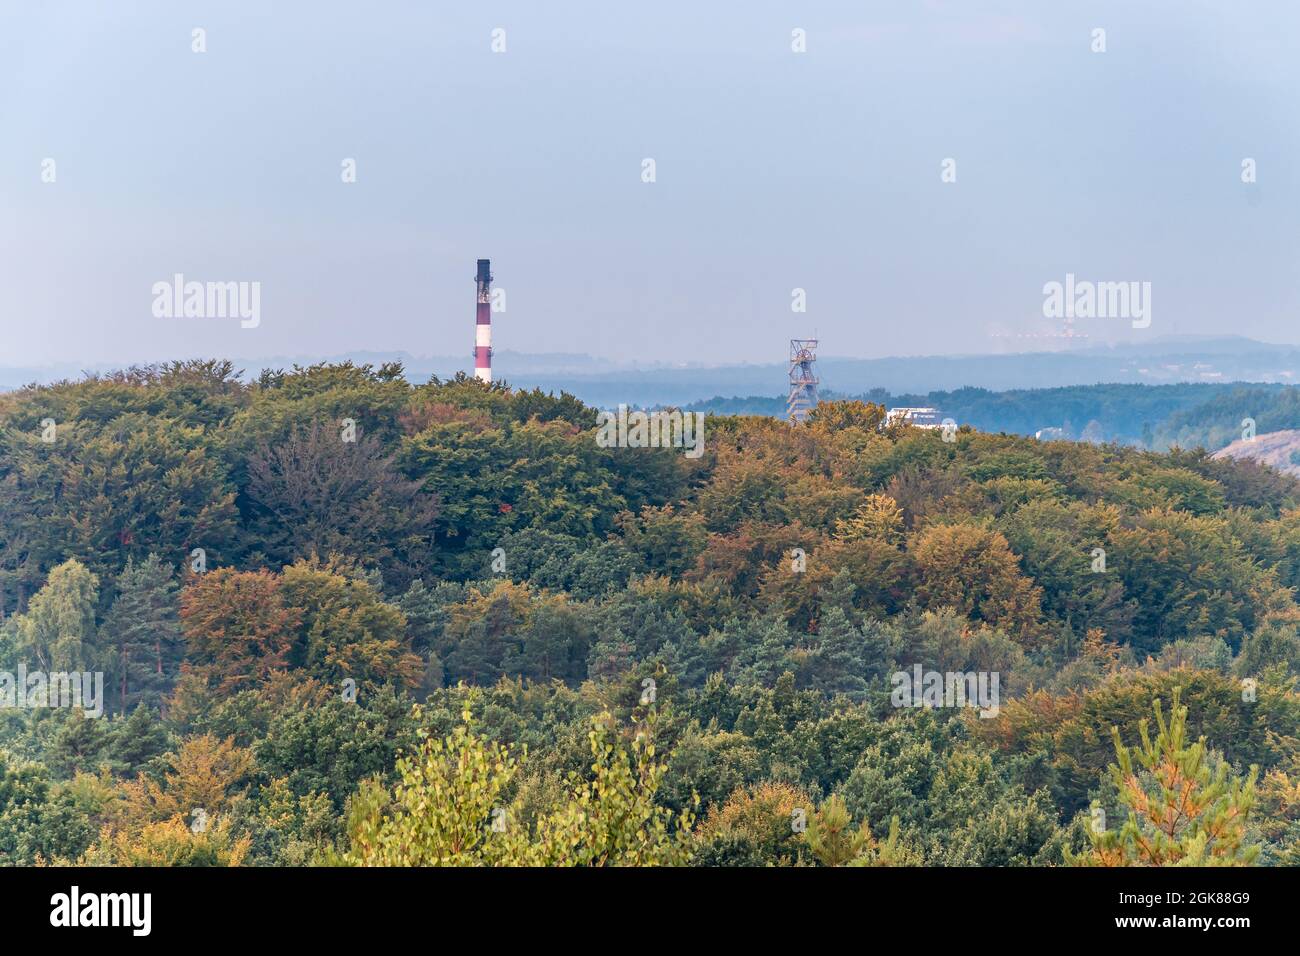 Der Turm des Minenschachts und der Fabrikschornstein bilden die Gipfel der Bäume, die durch die aufgehende Sonne aufgehellt werden. Luftaufnahme auf Herbstwald. Wald-, Fabrik- und Bergbauhaufen Stockfoto